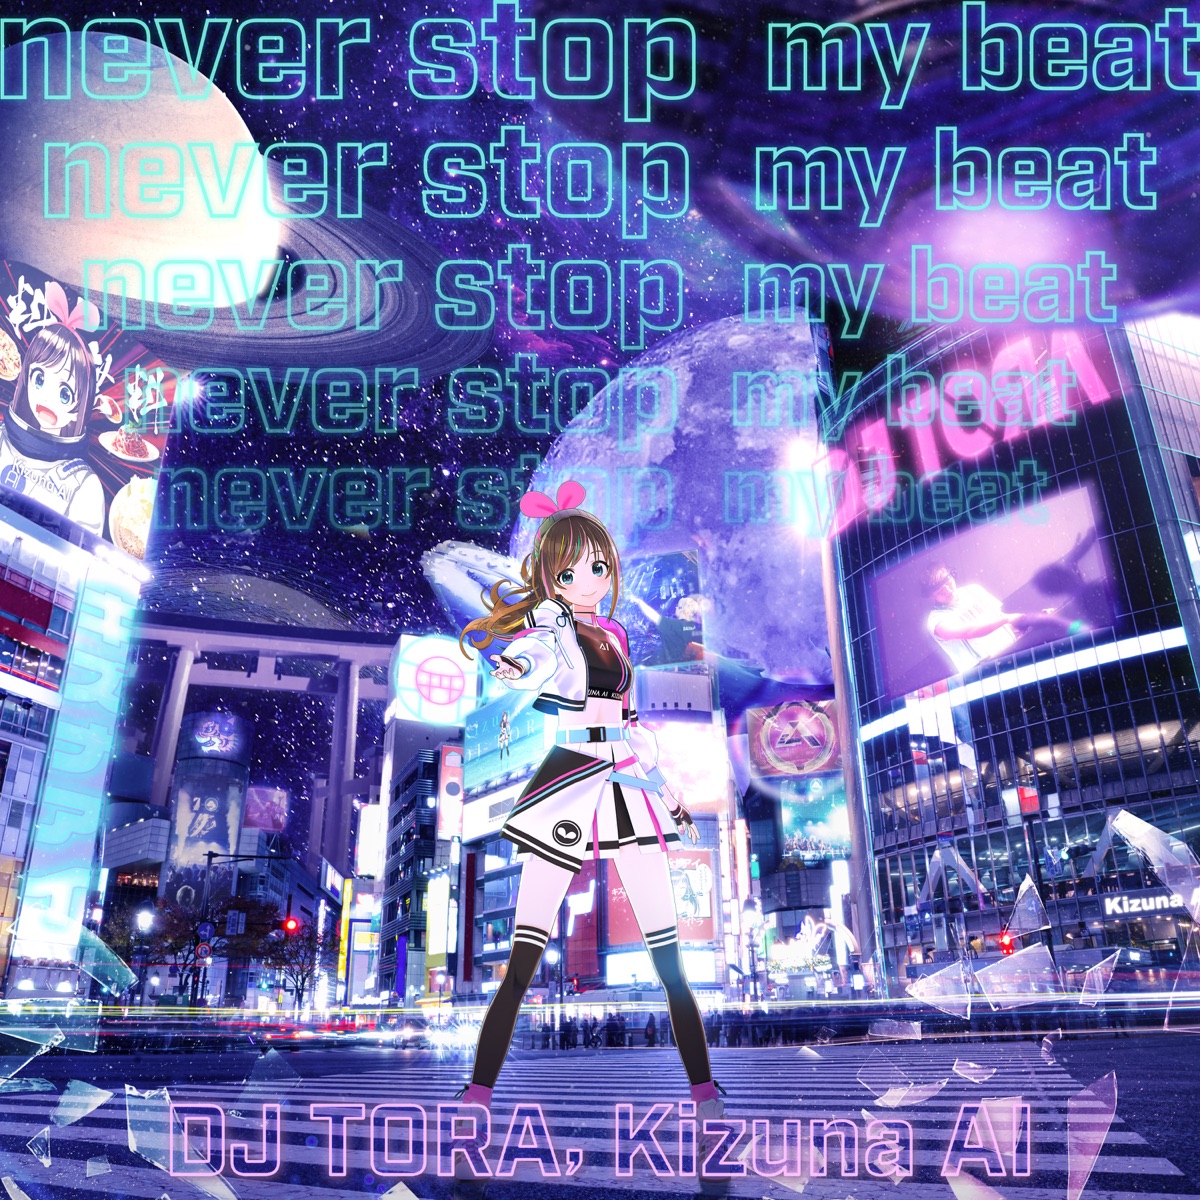 『DJ TORA & Kizuna AI - never stop my beat 歌詞』収録の『never stop my beat』ジャケット